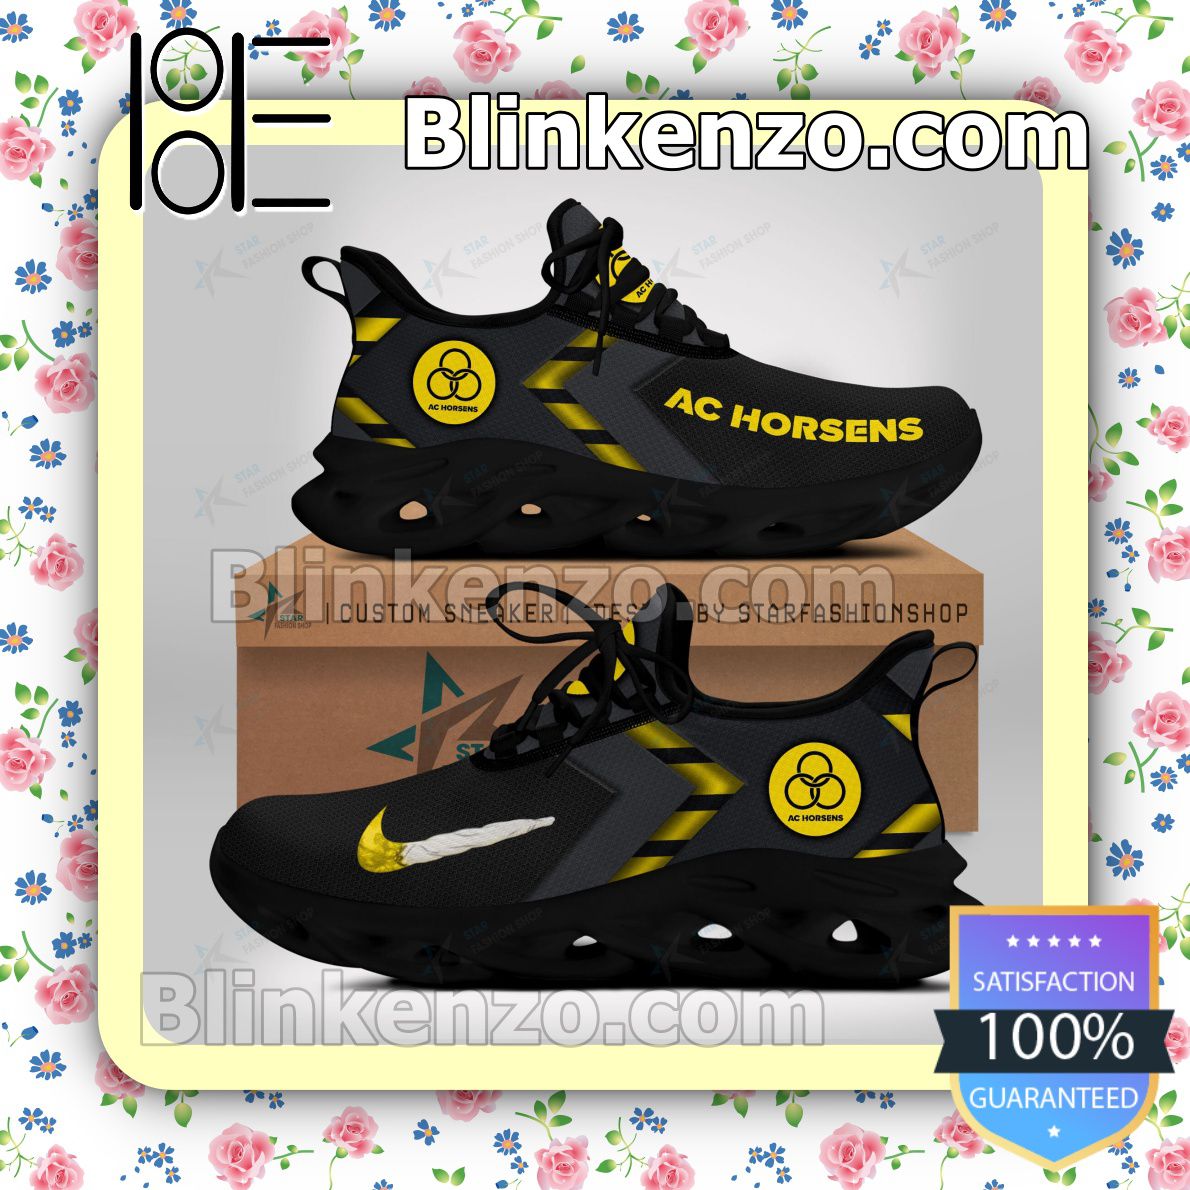 Grænseværdi absurd Neuropati AC Horsens Logo Print Sports Sneaker - Blinkenzo